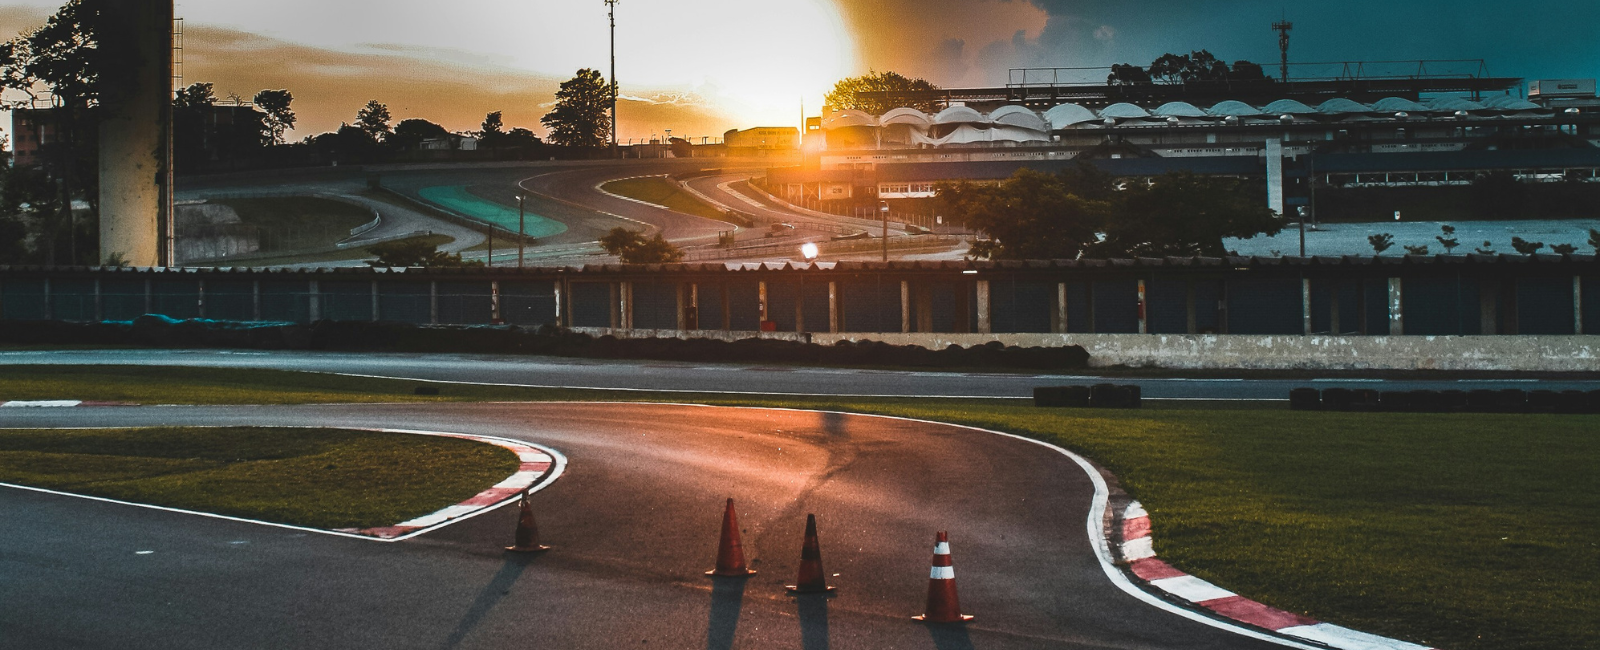 Sao Paulo's Autodromo Jose Carlos Pace at sunset